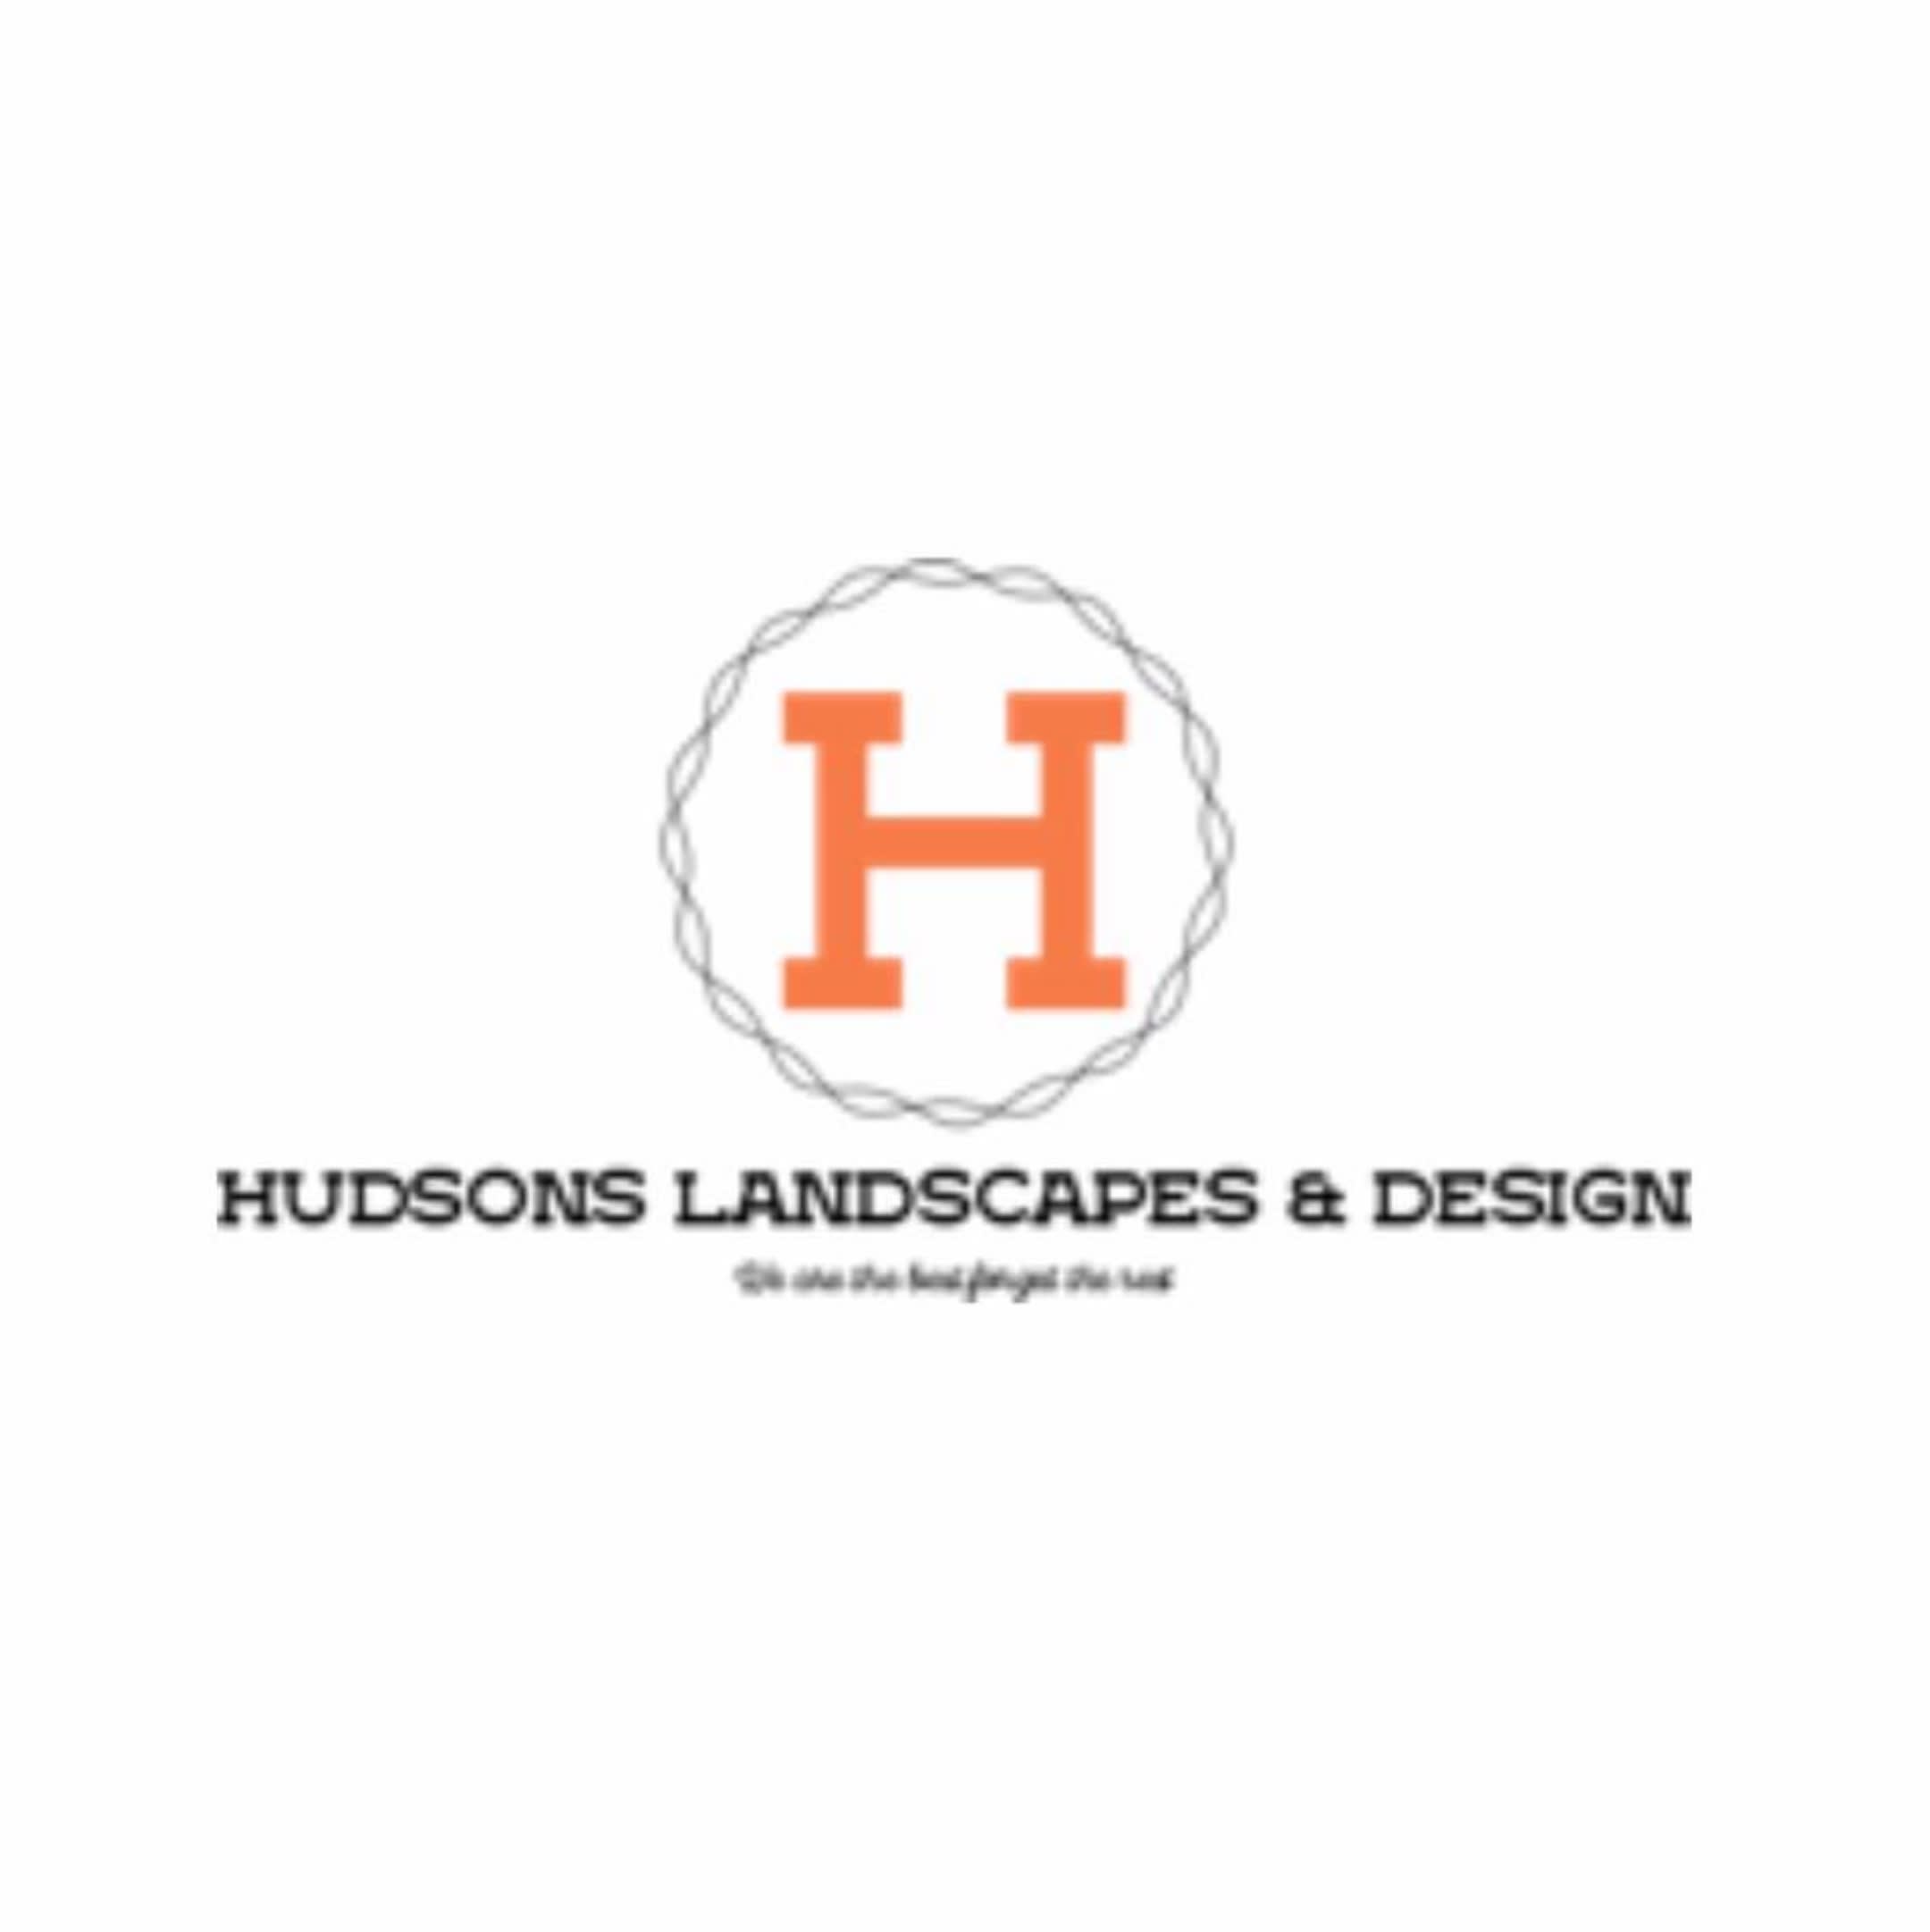 Hudsons Landscapes & Design